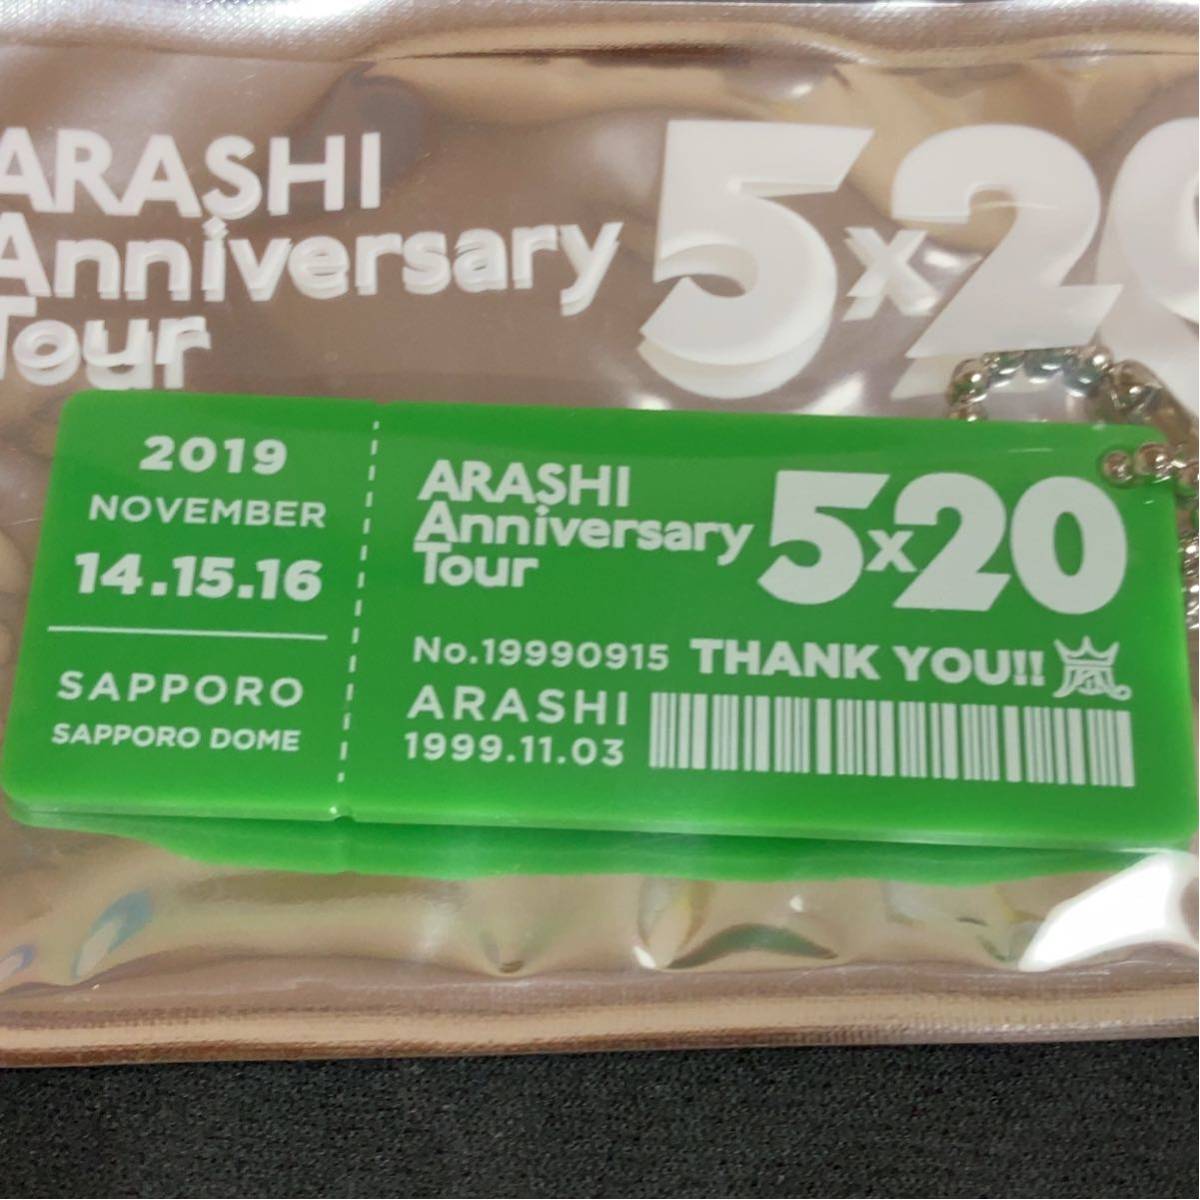 嵐 会場限定アクリルプレート第3弾(11/14.15.16) 「ARASHI Anniversary Tour 5×20」 札幌会場限定